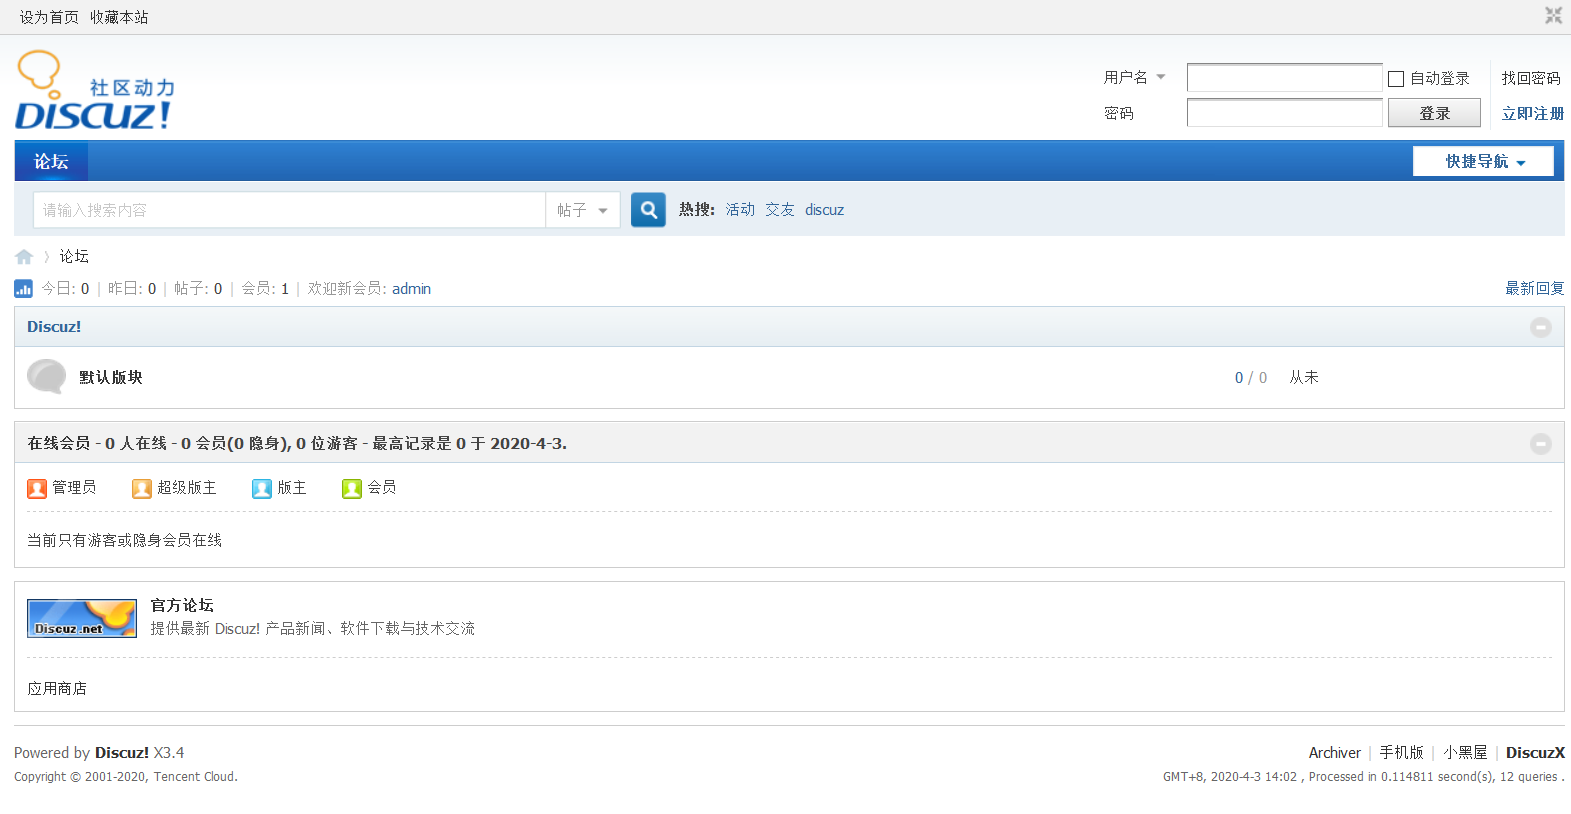 Name php forum. Boyxzeed2 similar. Boyxzeed Discuz. Форум php. Boyxzeed Chinese.